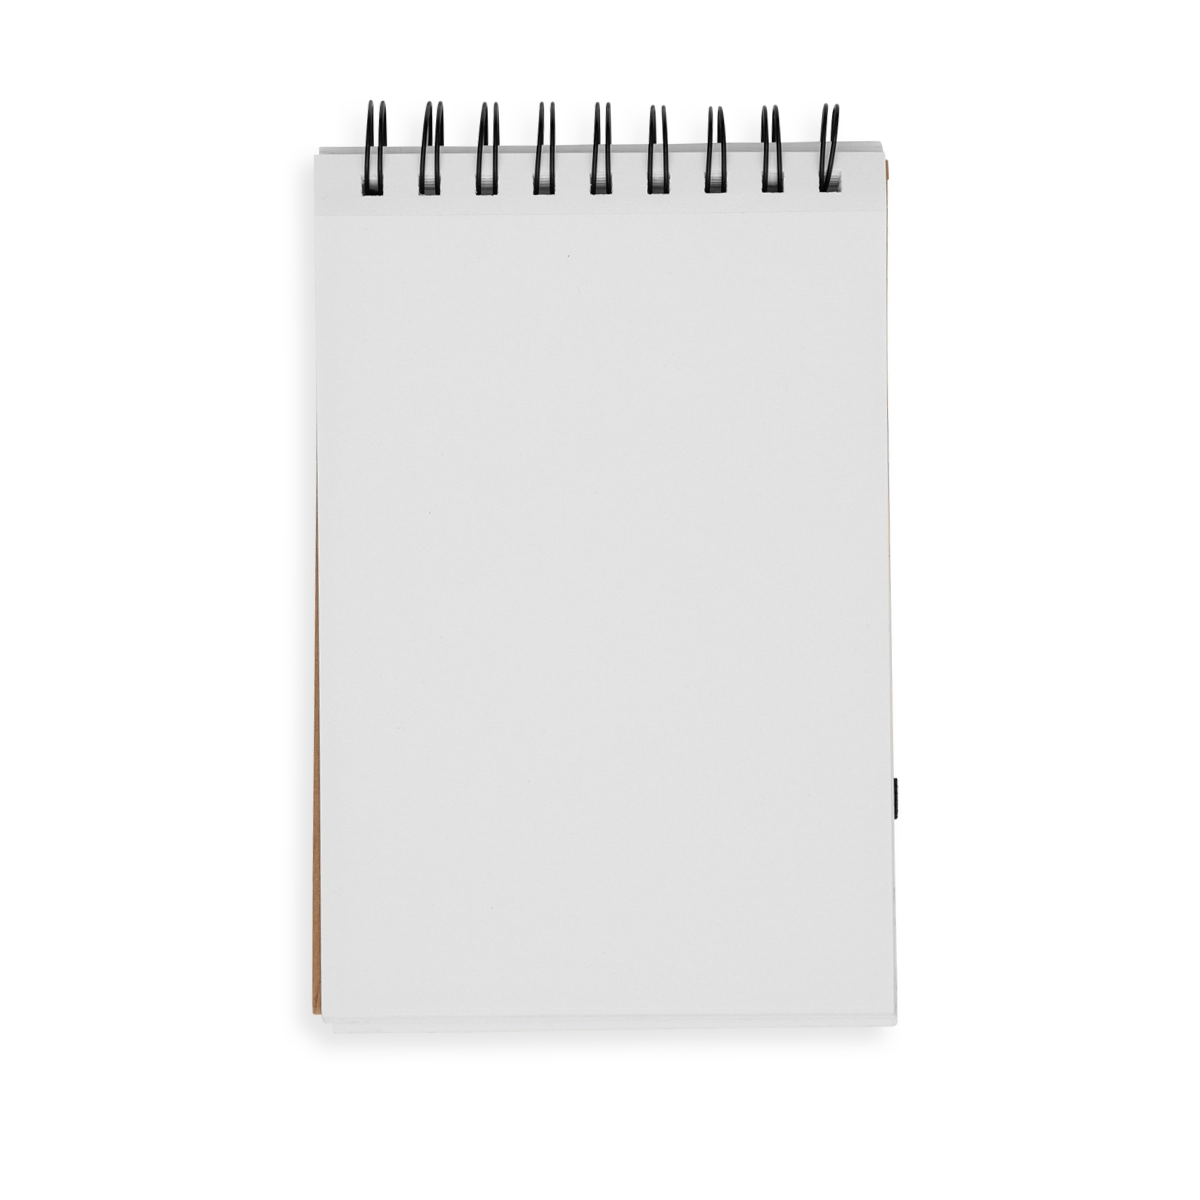 D.I.Y. Cover Sketchbook- Large White